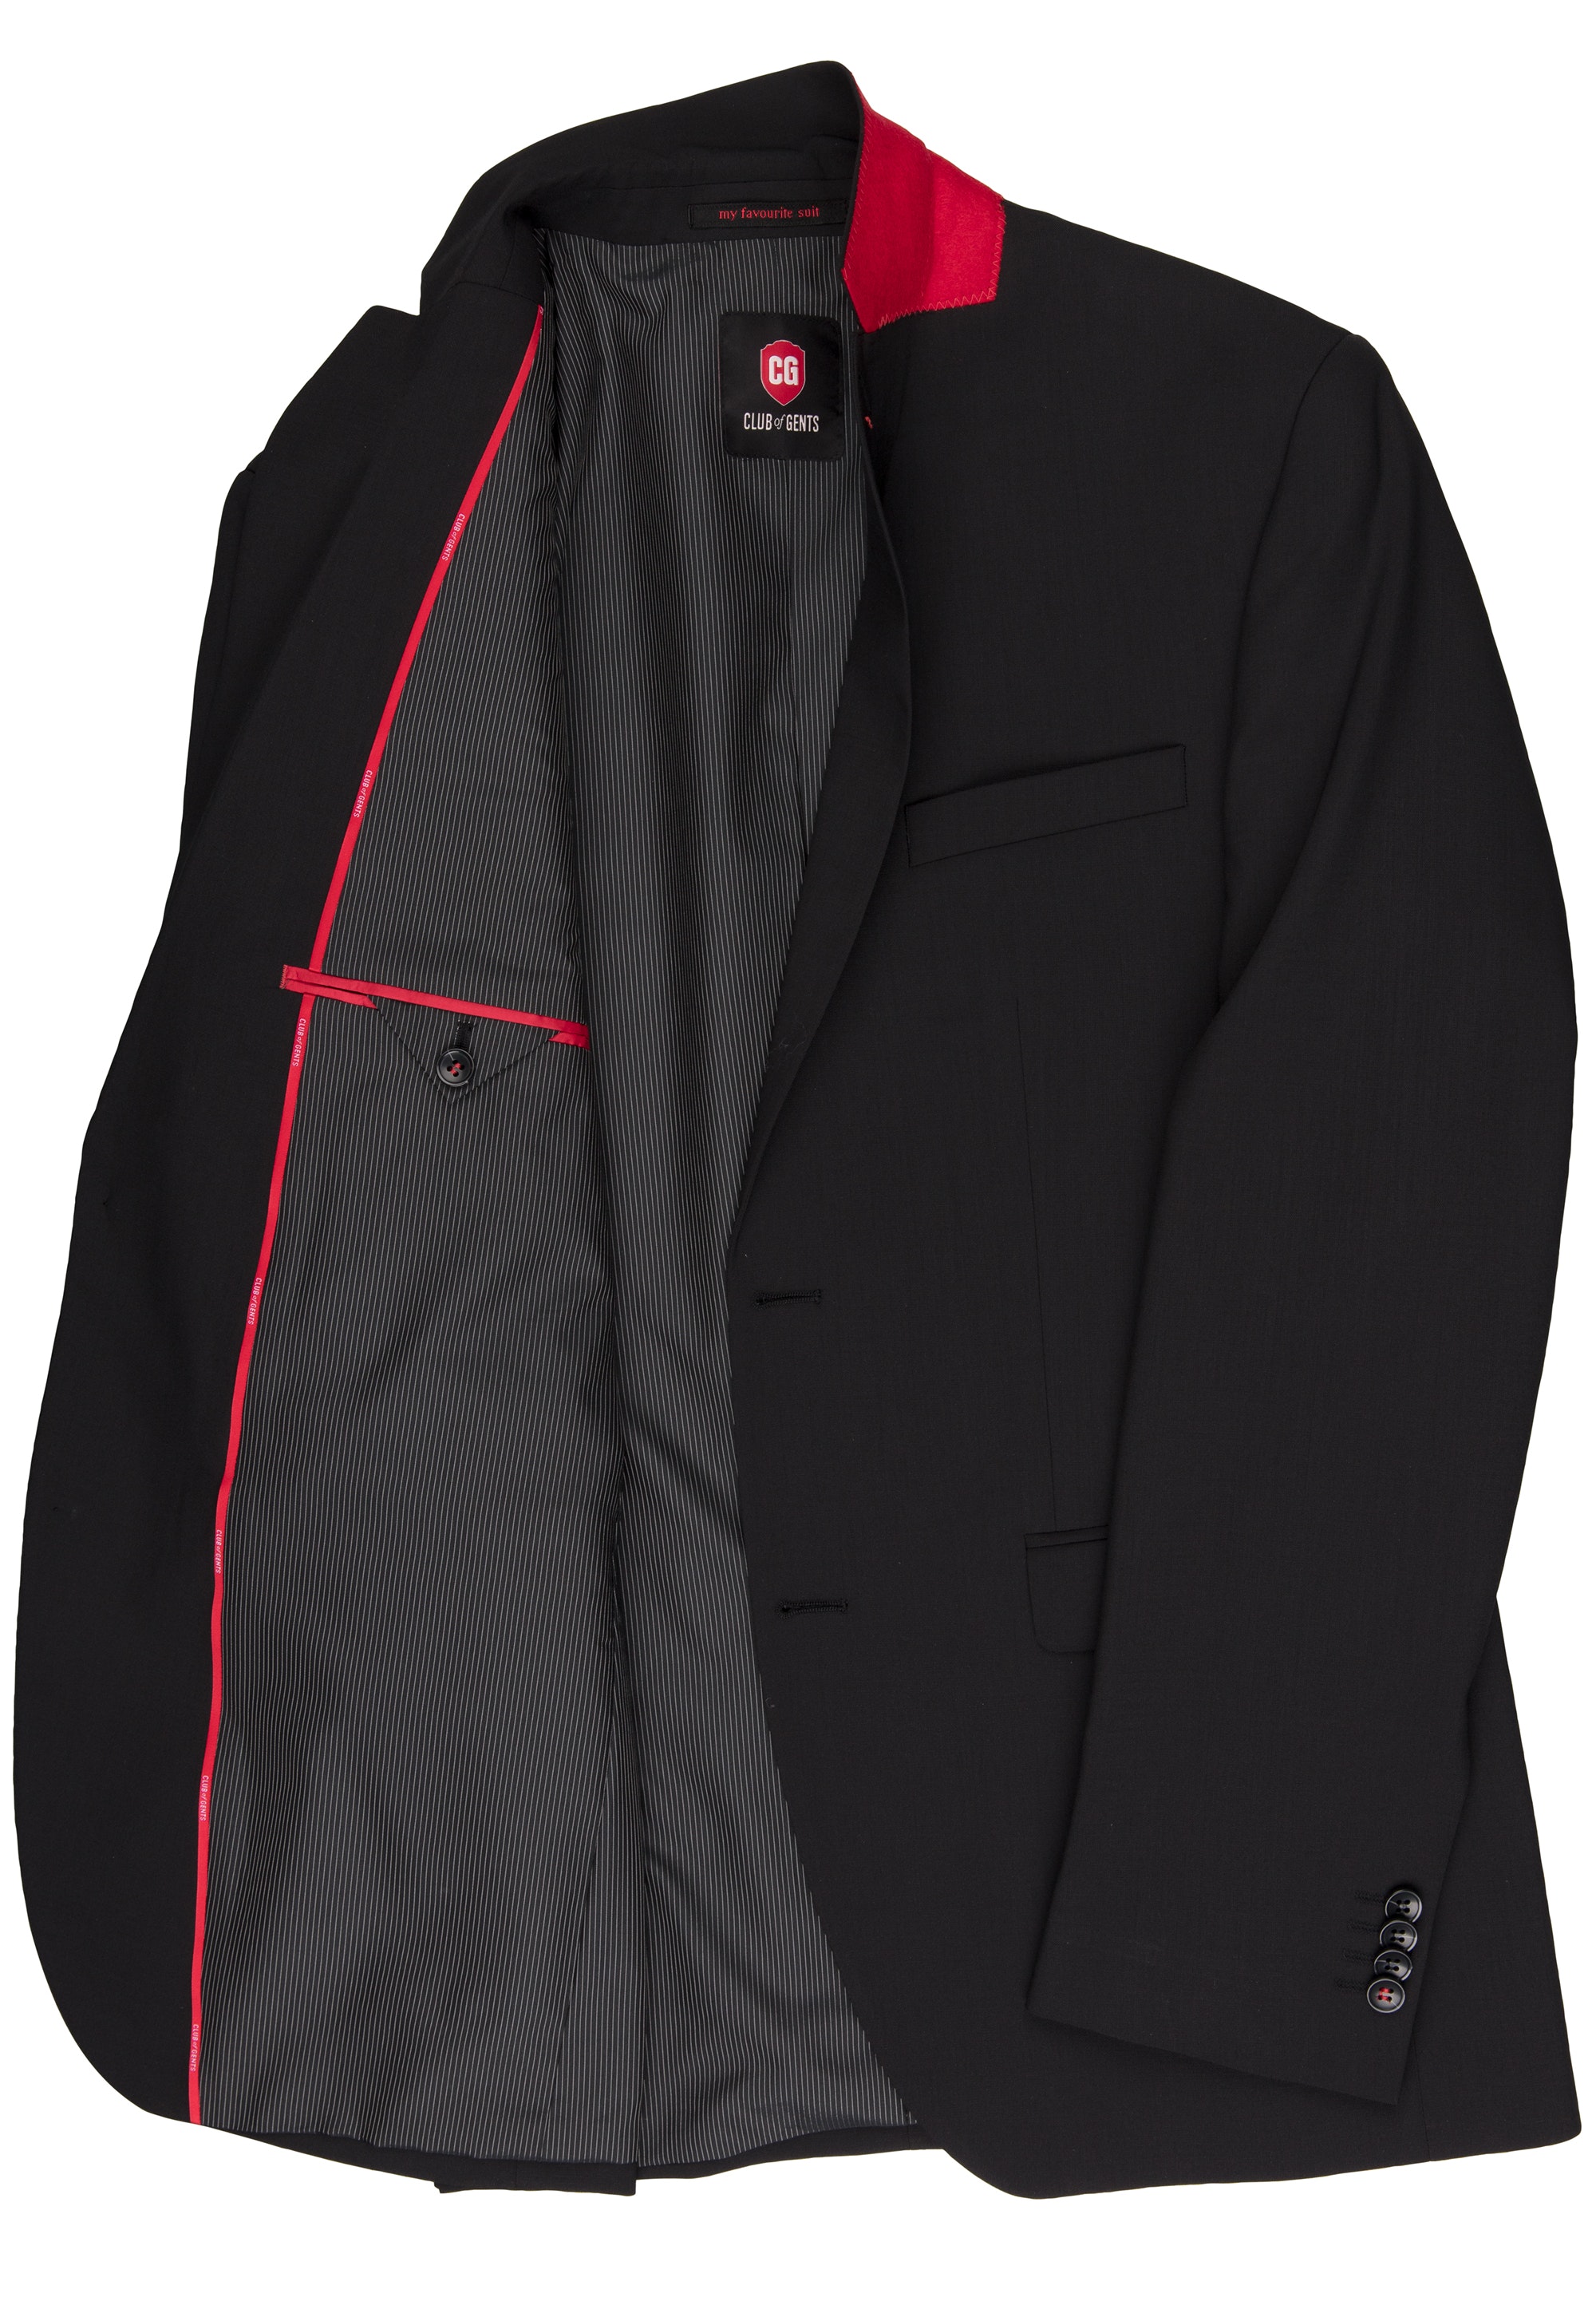 Sakko/jacket Andy SV